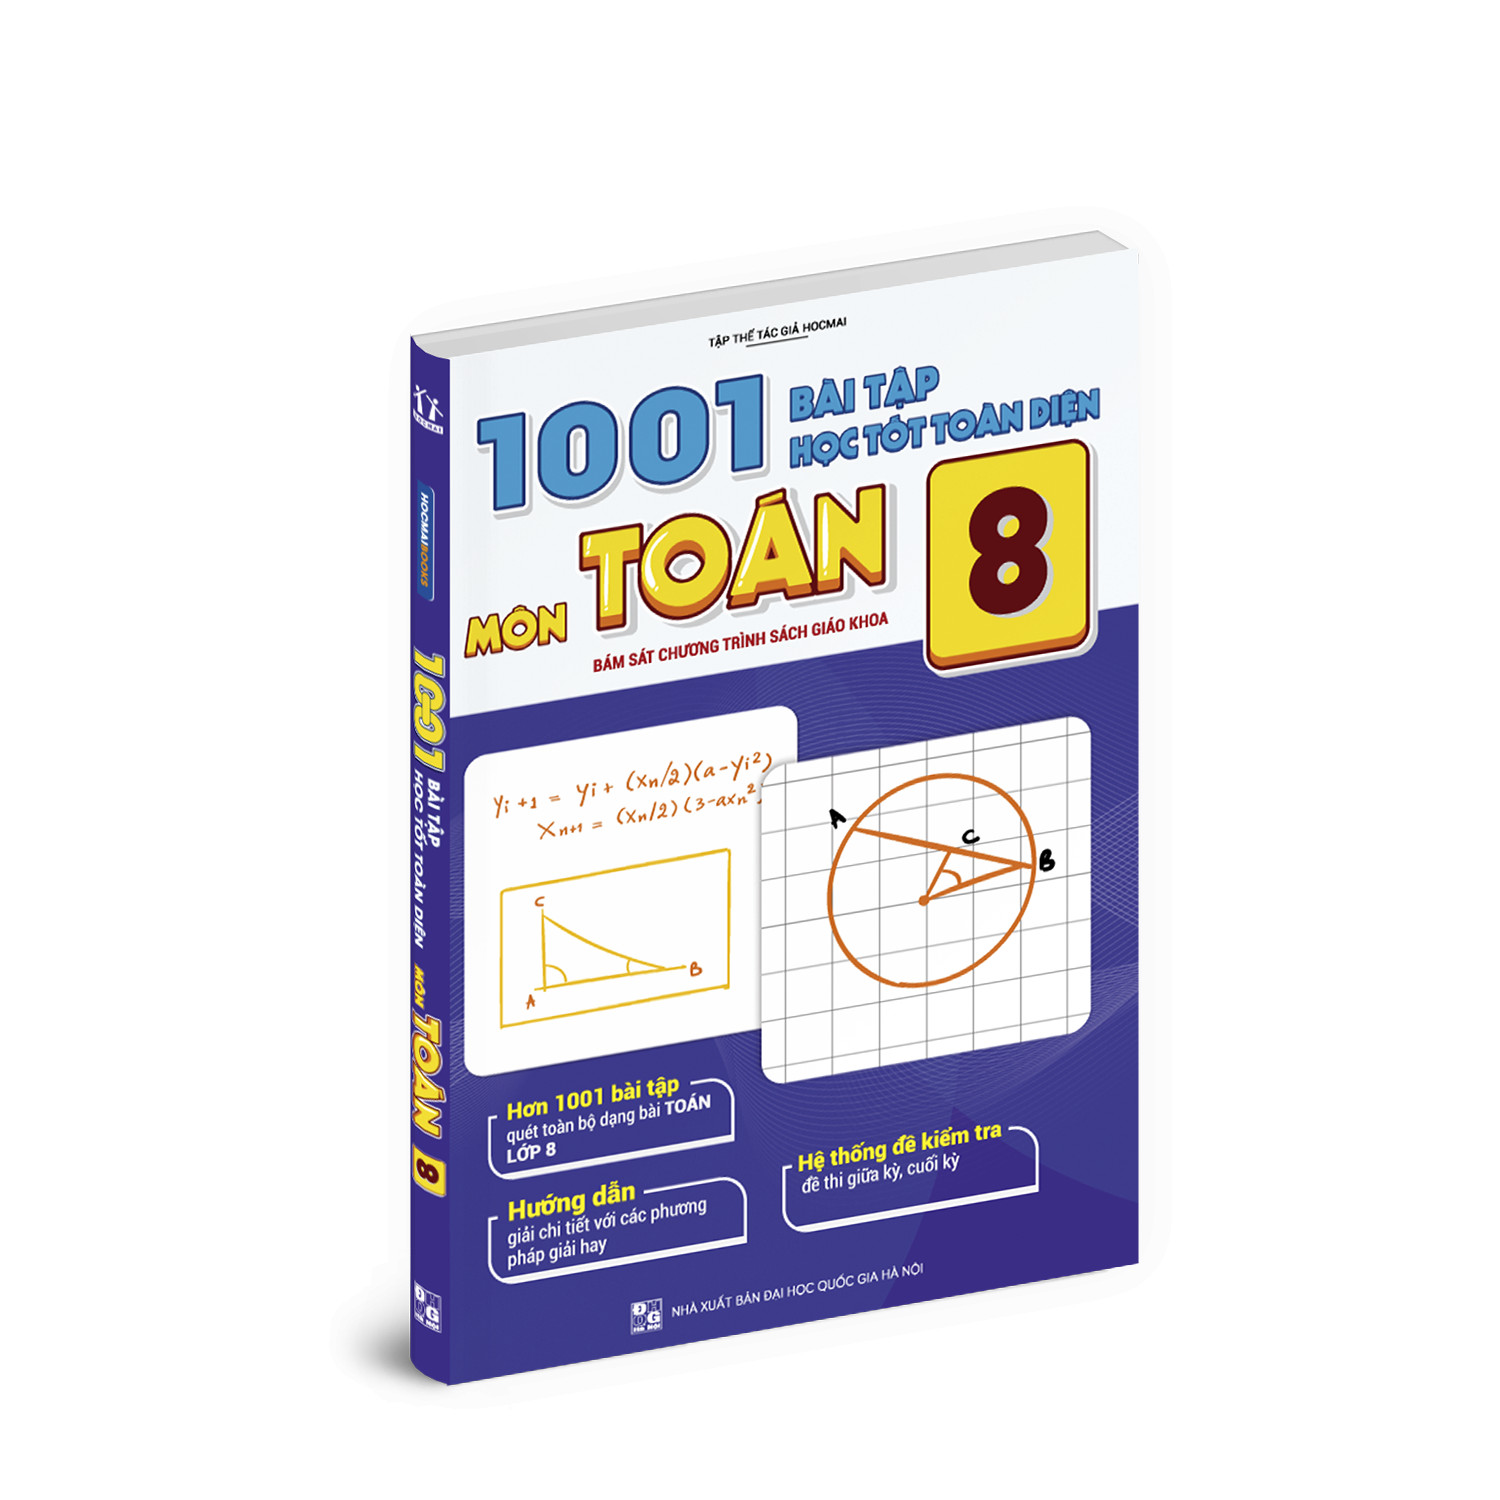 1001 bài tập học tốt toàn diện môn Toán lớp 8